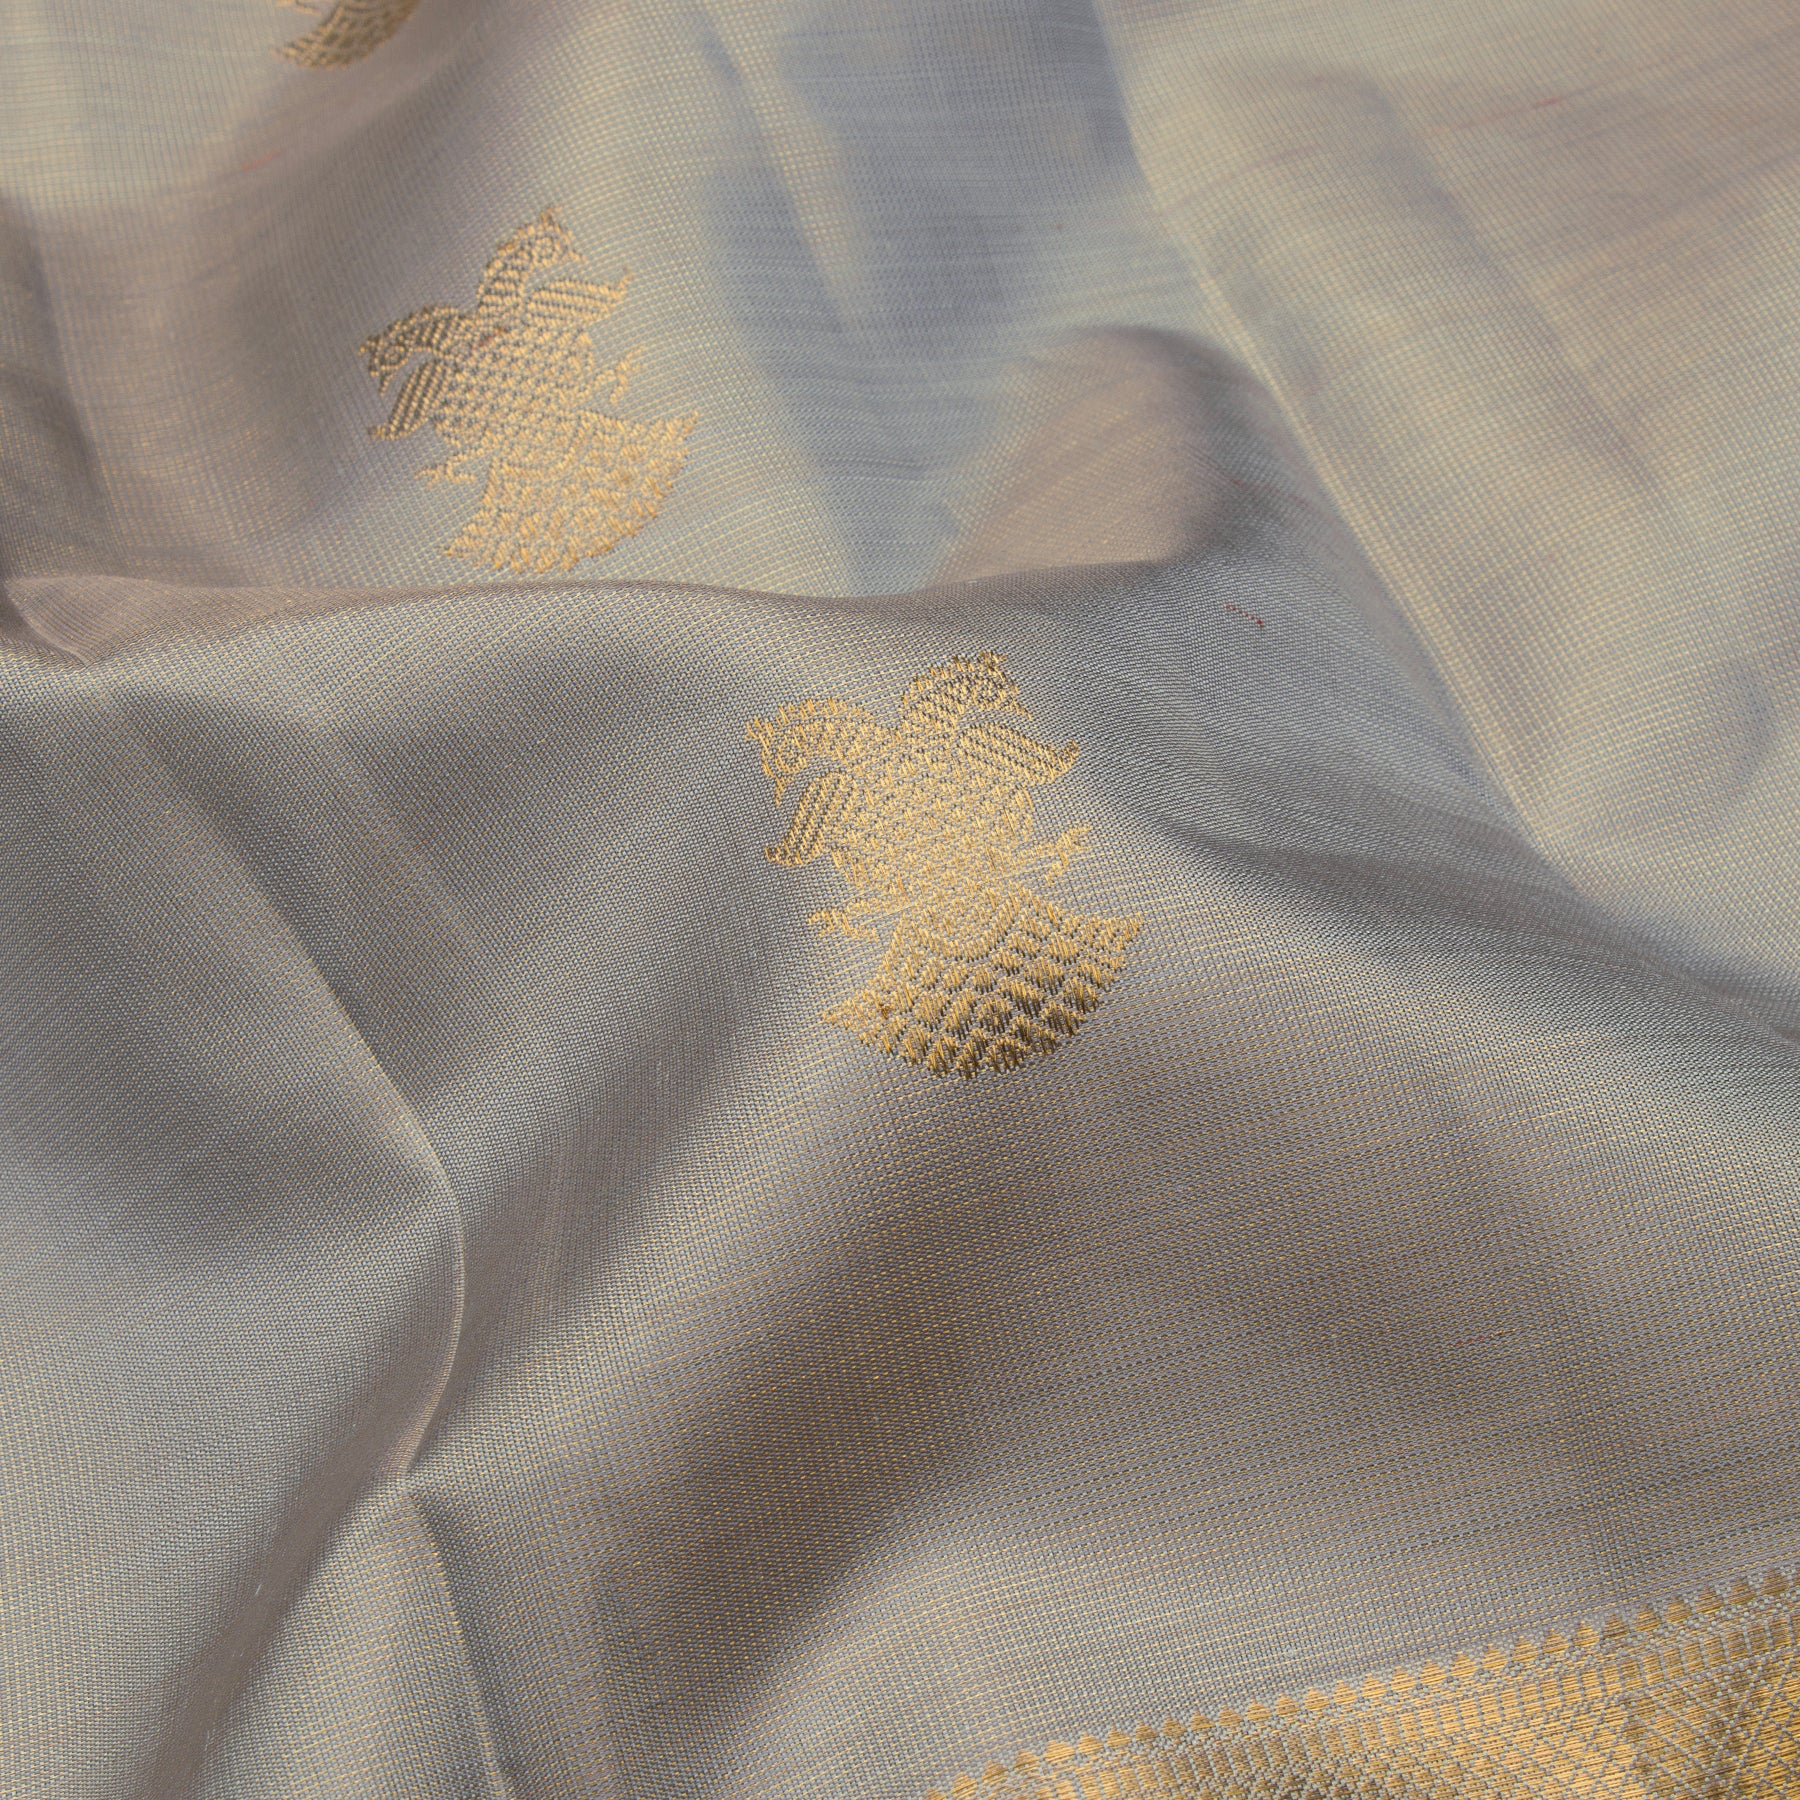 Kanakavalli Kanjivaram Silk Sari 23-110-HS001-11729 - Fabric View